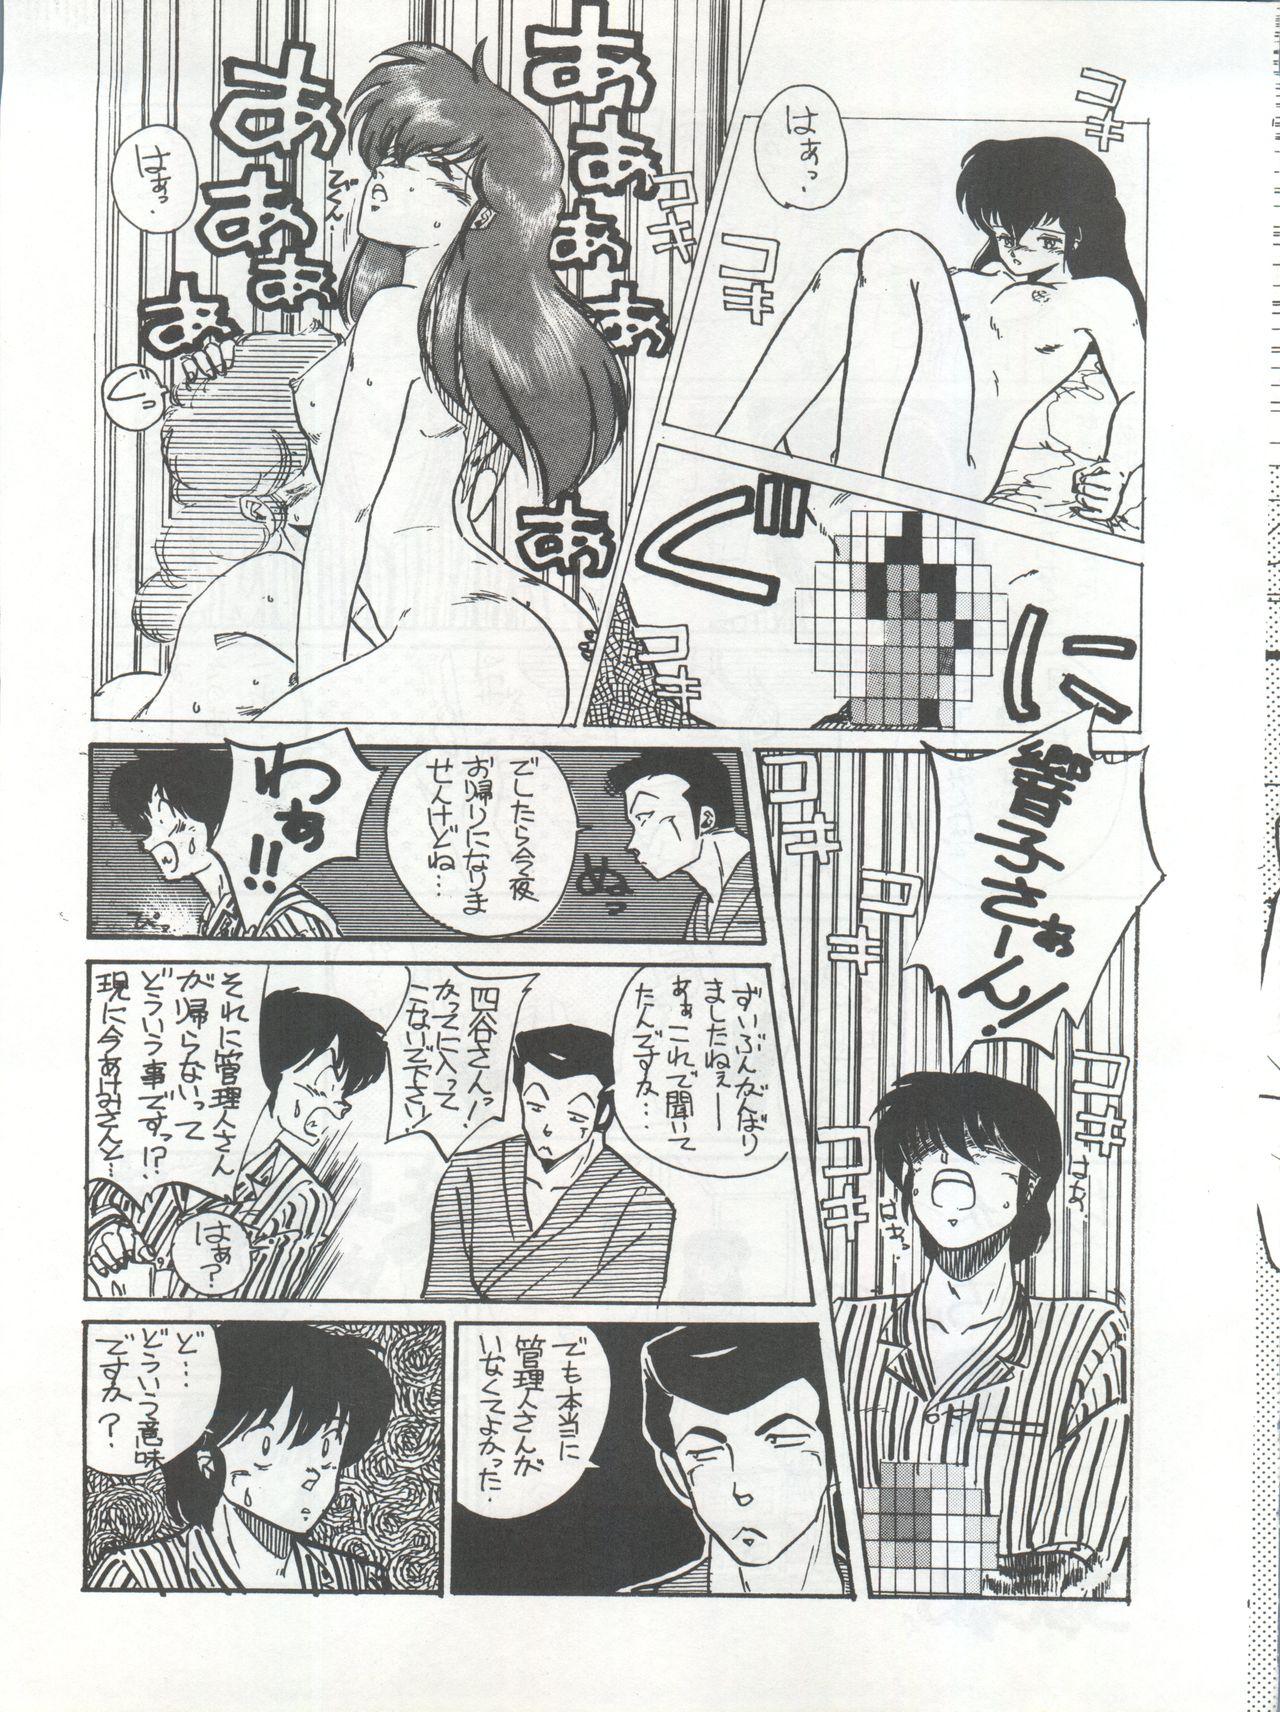 Real Orgasm Ikkoku-kan 0 Gou Shitsu Part III - Maison ikkoku Passivo - Page 11